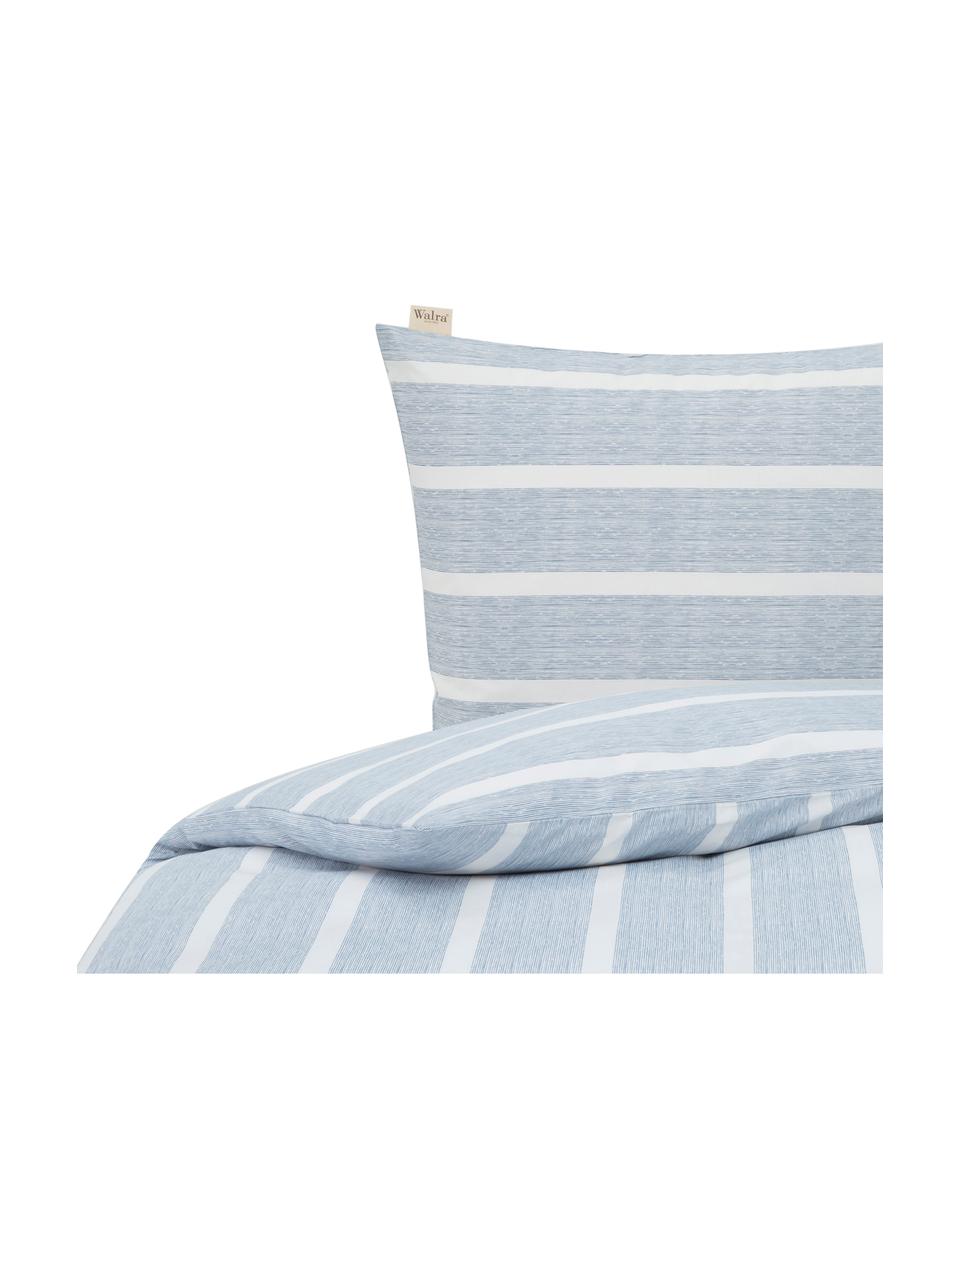 Pościel z bawełny Stripe Along, Niebieski, biały, 135 x 200 cm + 1 poduszka 80 x 80 cm